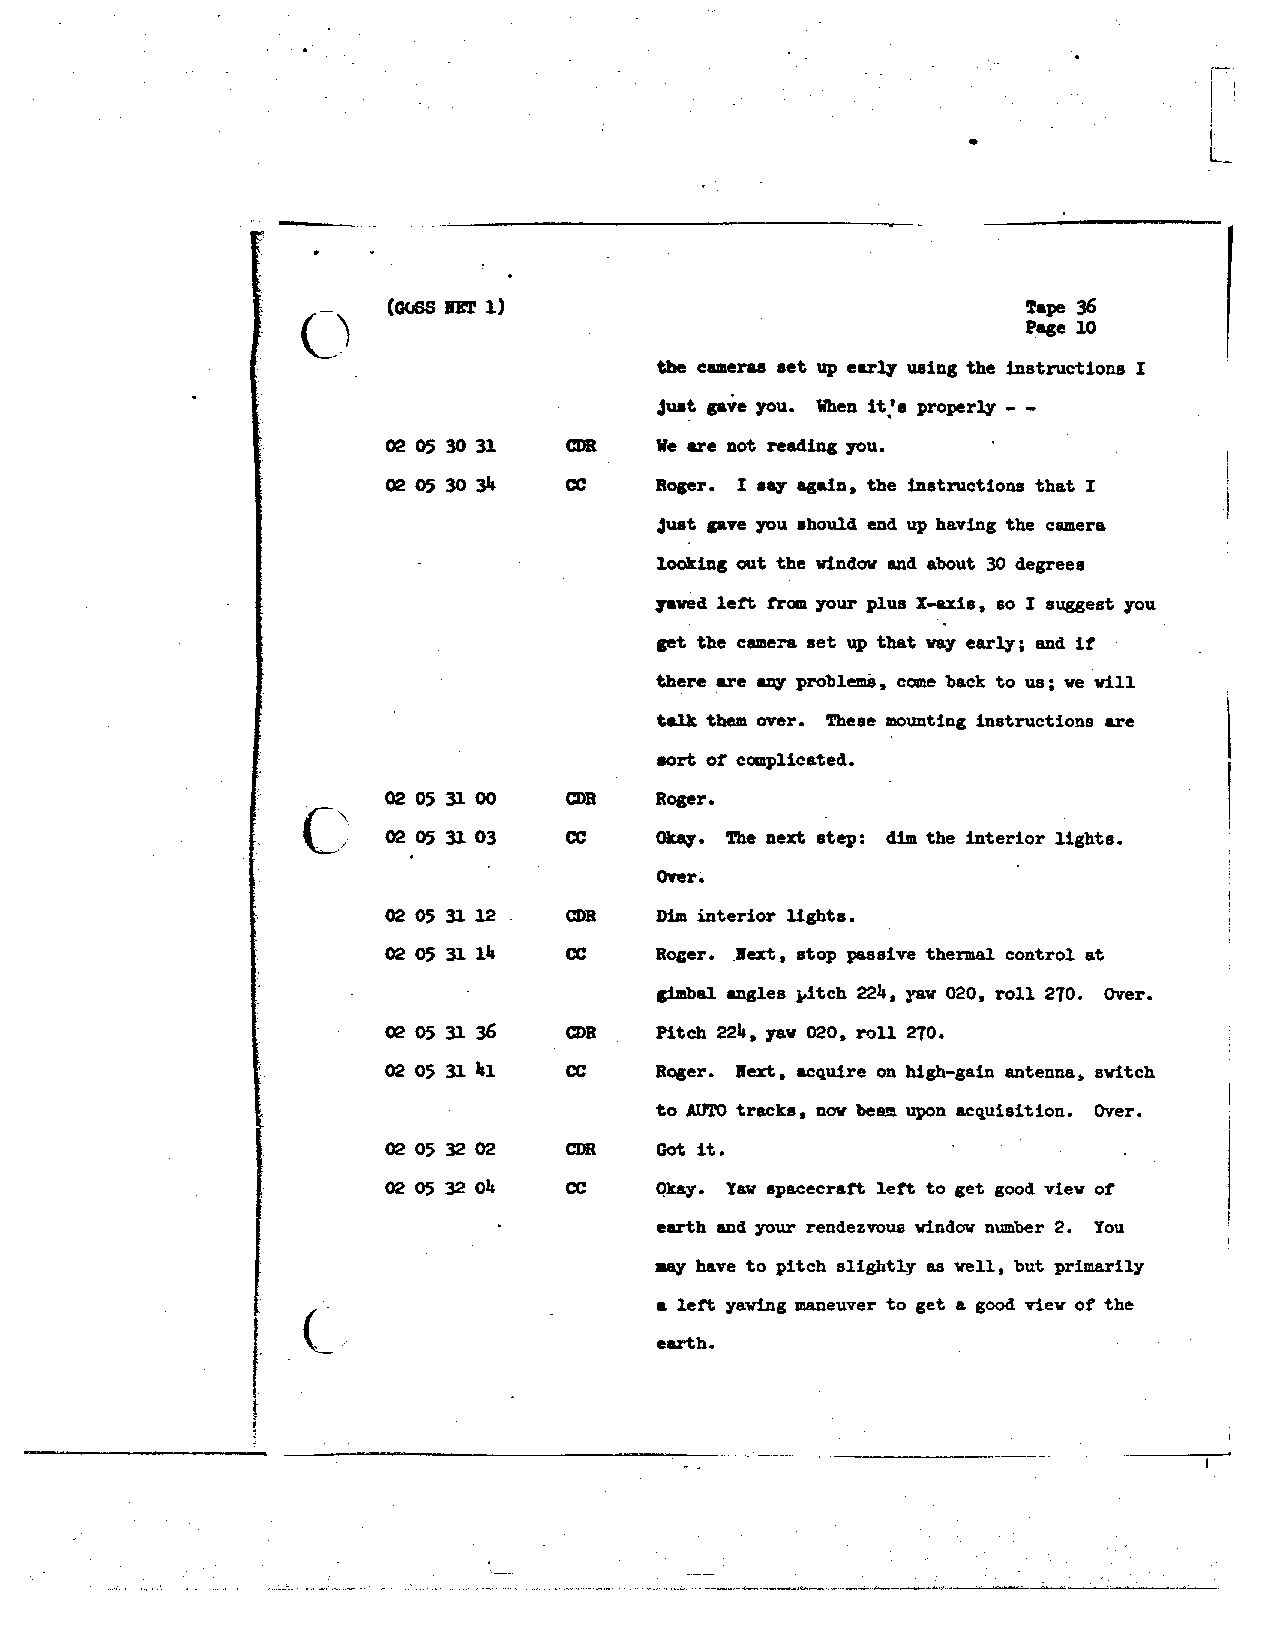 Page 280 of Apollo 8’s original transcript